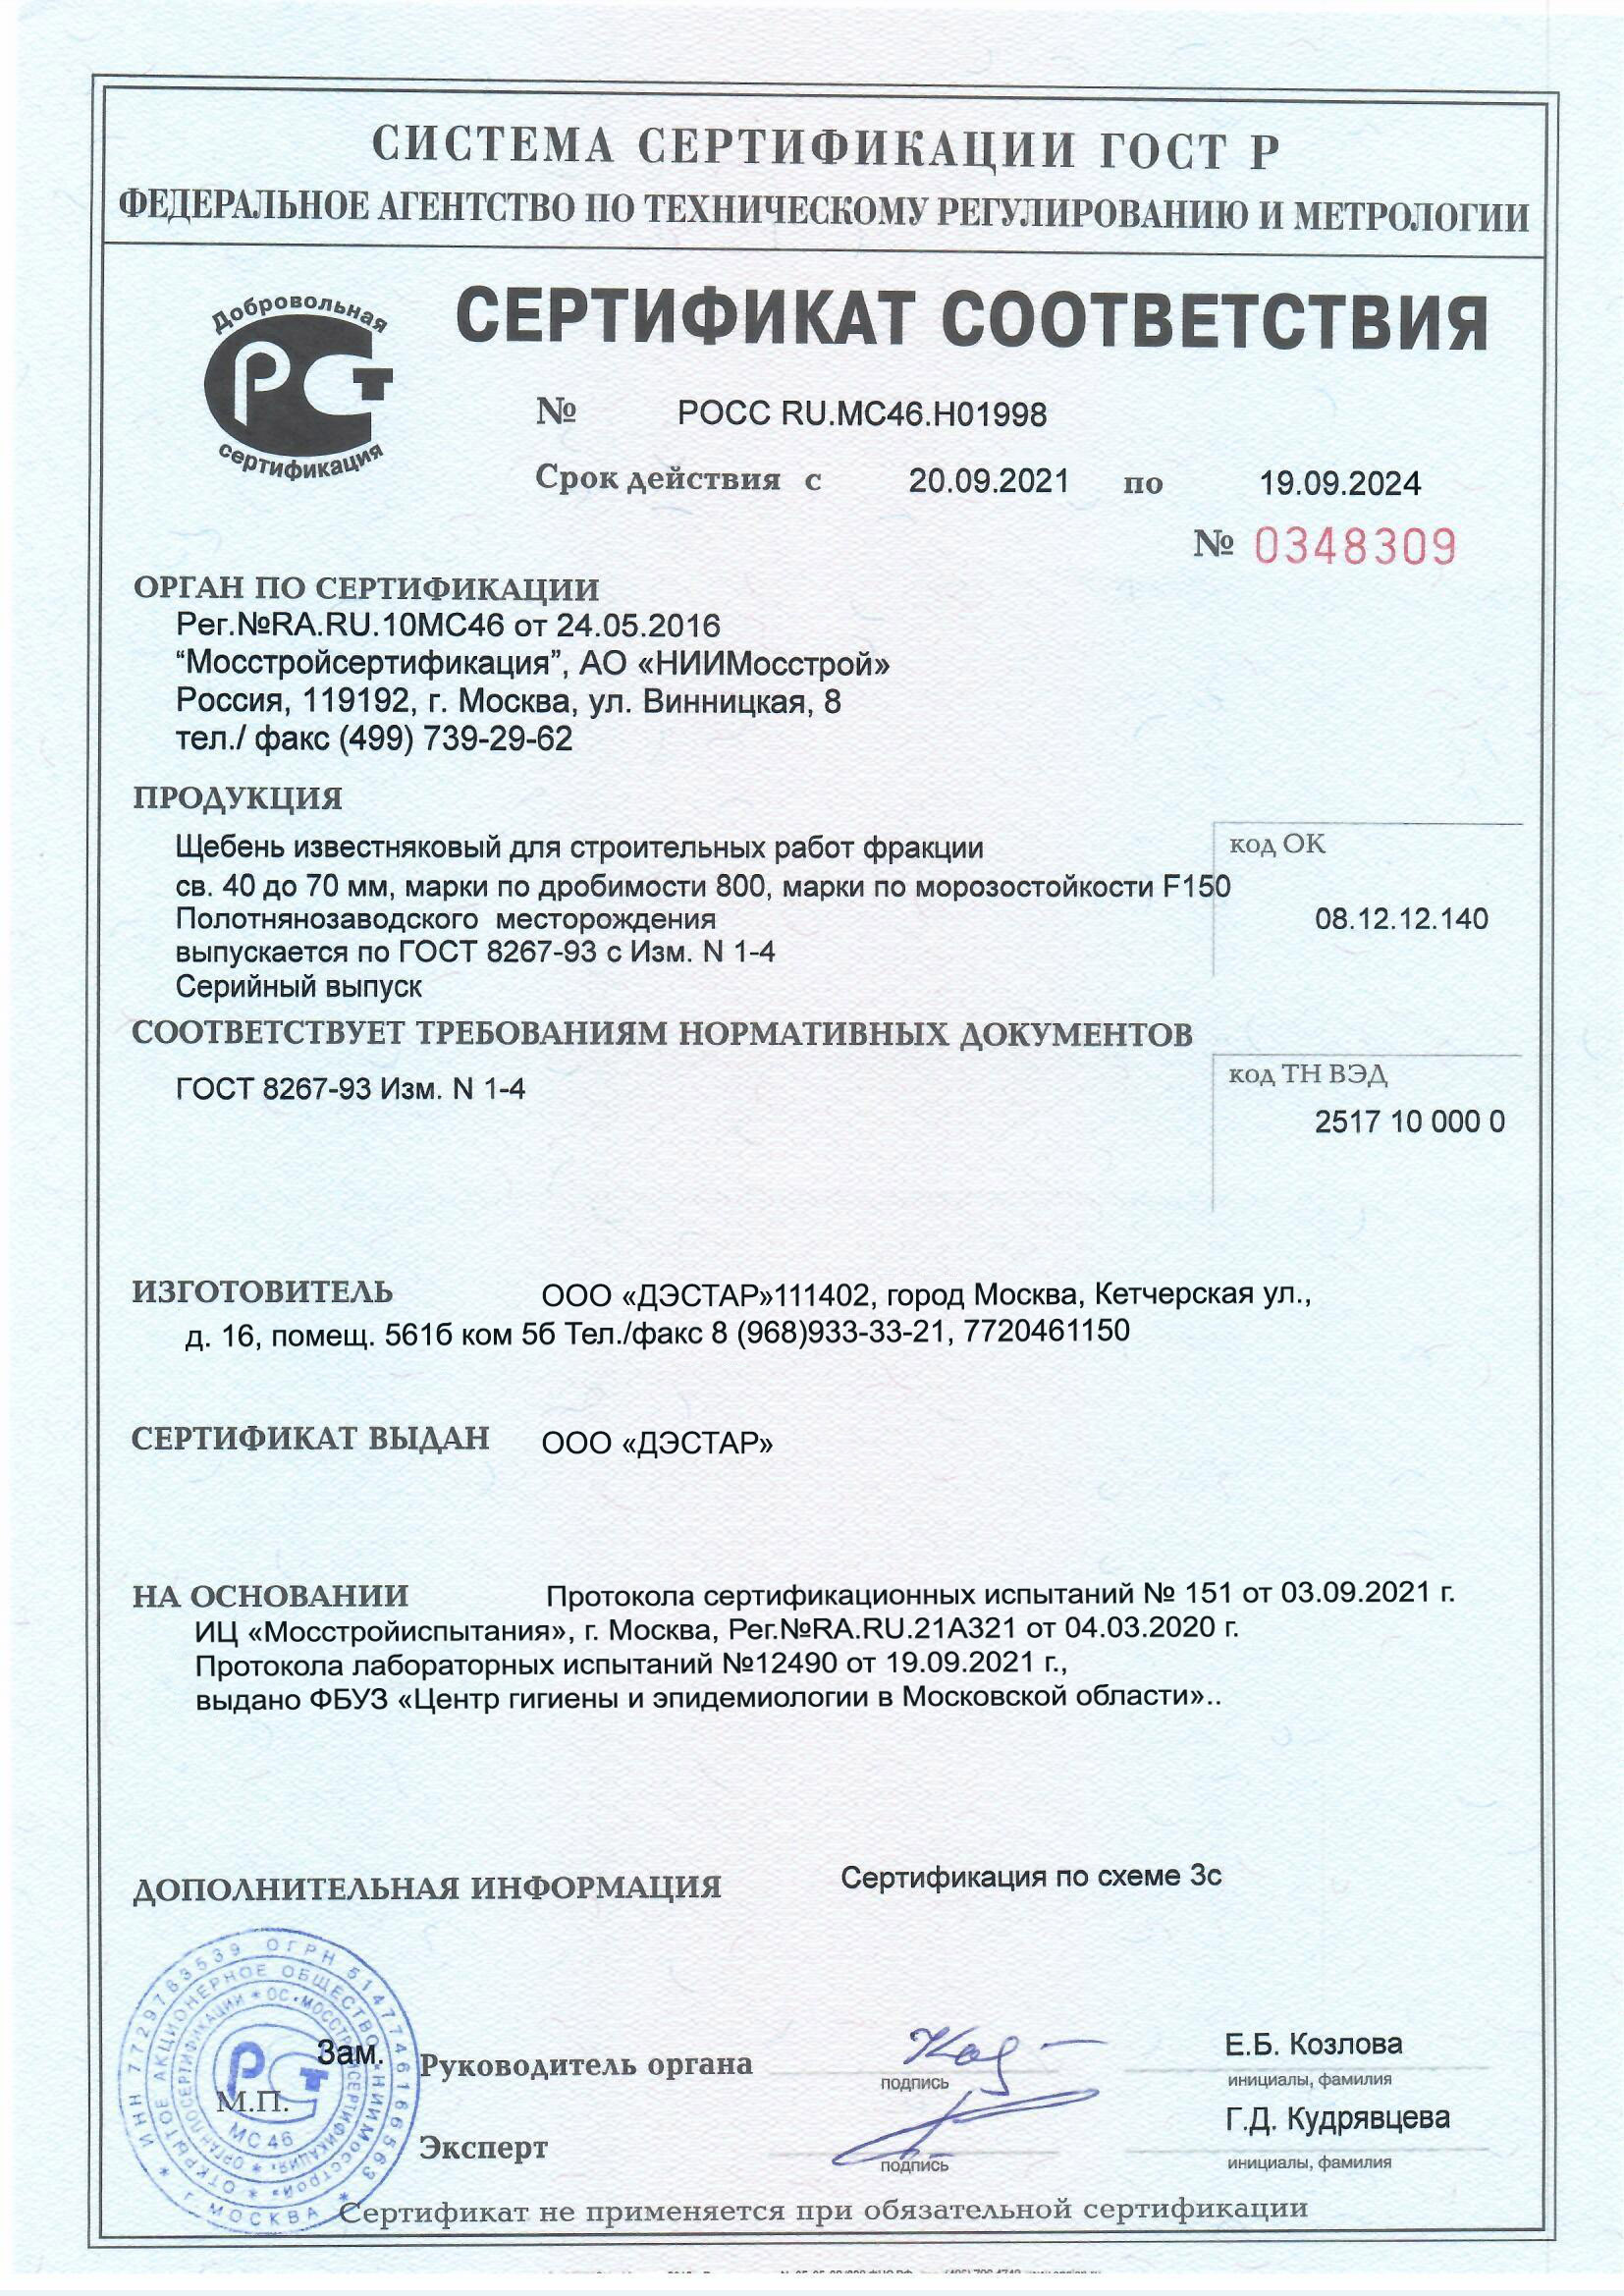 Сертификат соответствия на смеси бетонные тяжелого бетона бст класс в15 м200